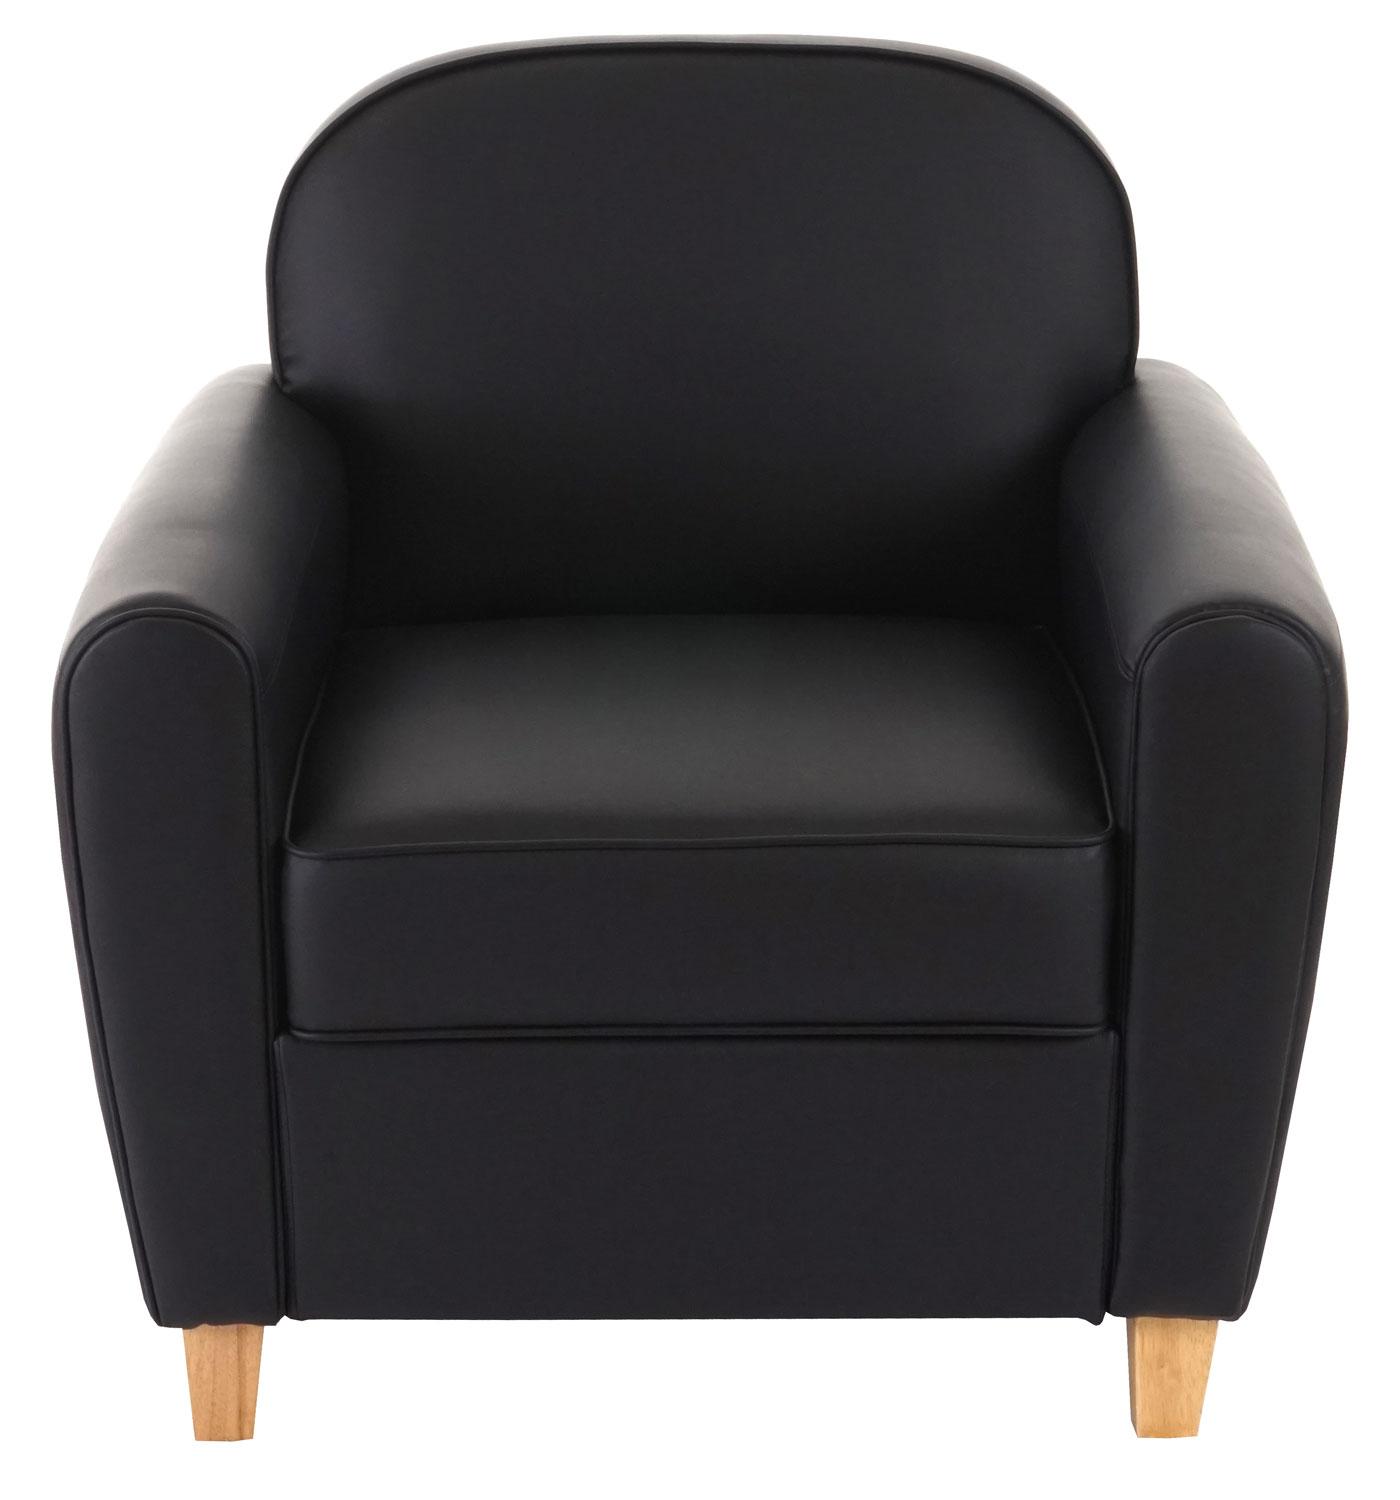 Sessel ARTIS. Elegantes Design, bequem und vielseitig, Lederbezug, Farbe Schwarz